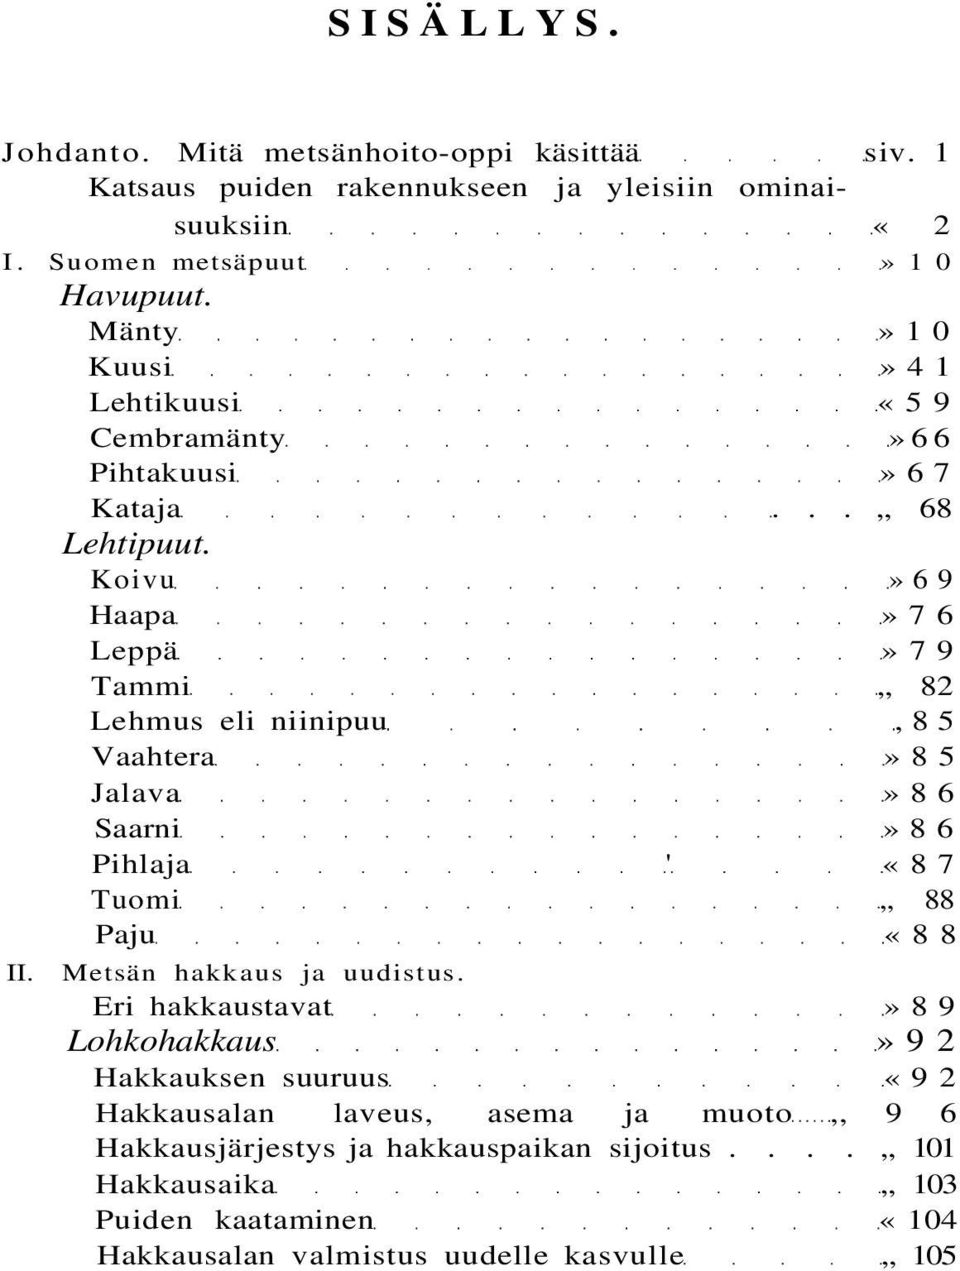 Koivu»69 Haapa»76 Leppä»79 Tammi 82 Lehmus eli niinipuu,85 Vaahtera»85 Jalava»86 Saarni»86 Pihlaja ' «87 Tuomi 88 Paju «88 II. Metsän hakkaus ja uudistus.